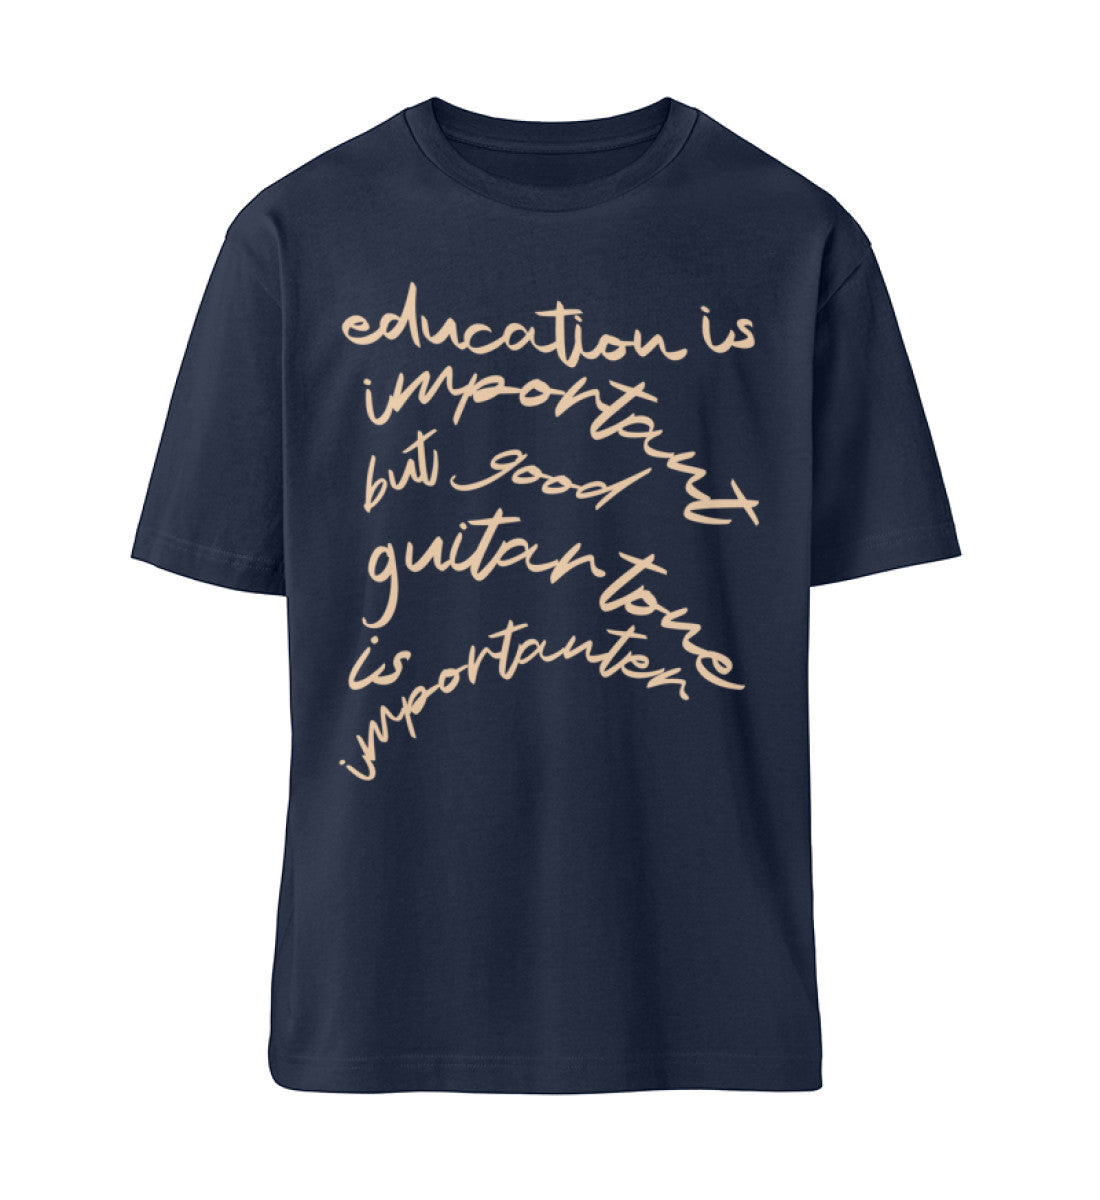 French Navy Blue T-Shirt Unisex Relaxed Fit für Frauen und Männer bedruckt mit dem Design der Roger Rockawoo Kollektion education versus guitar tone